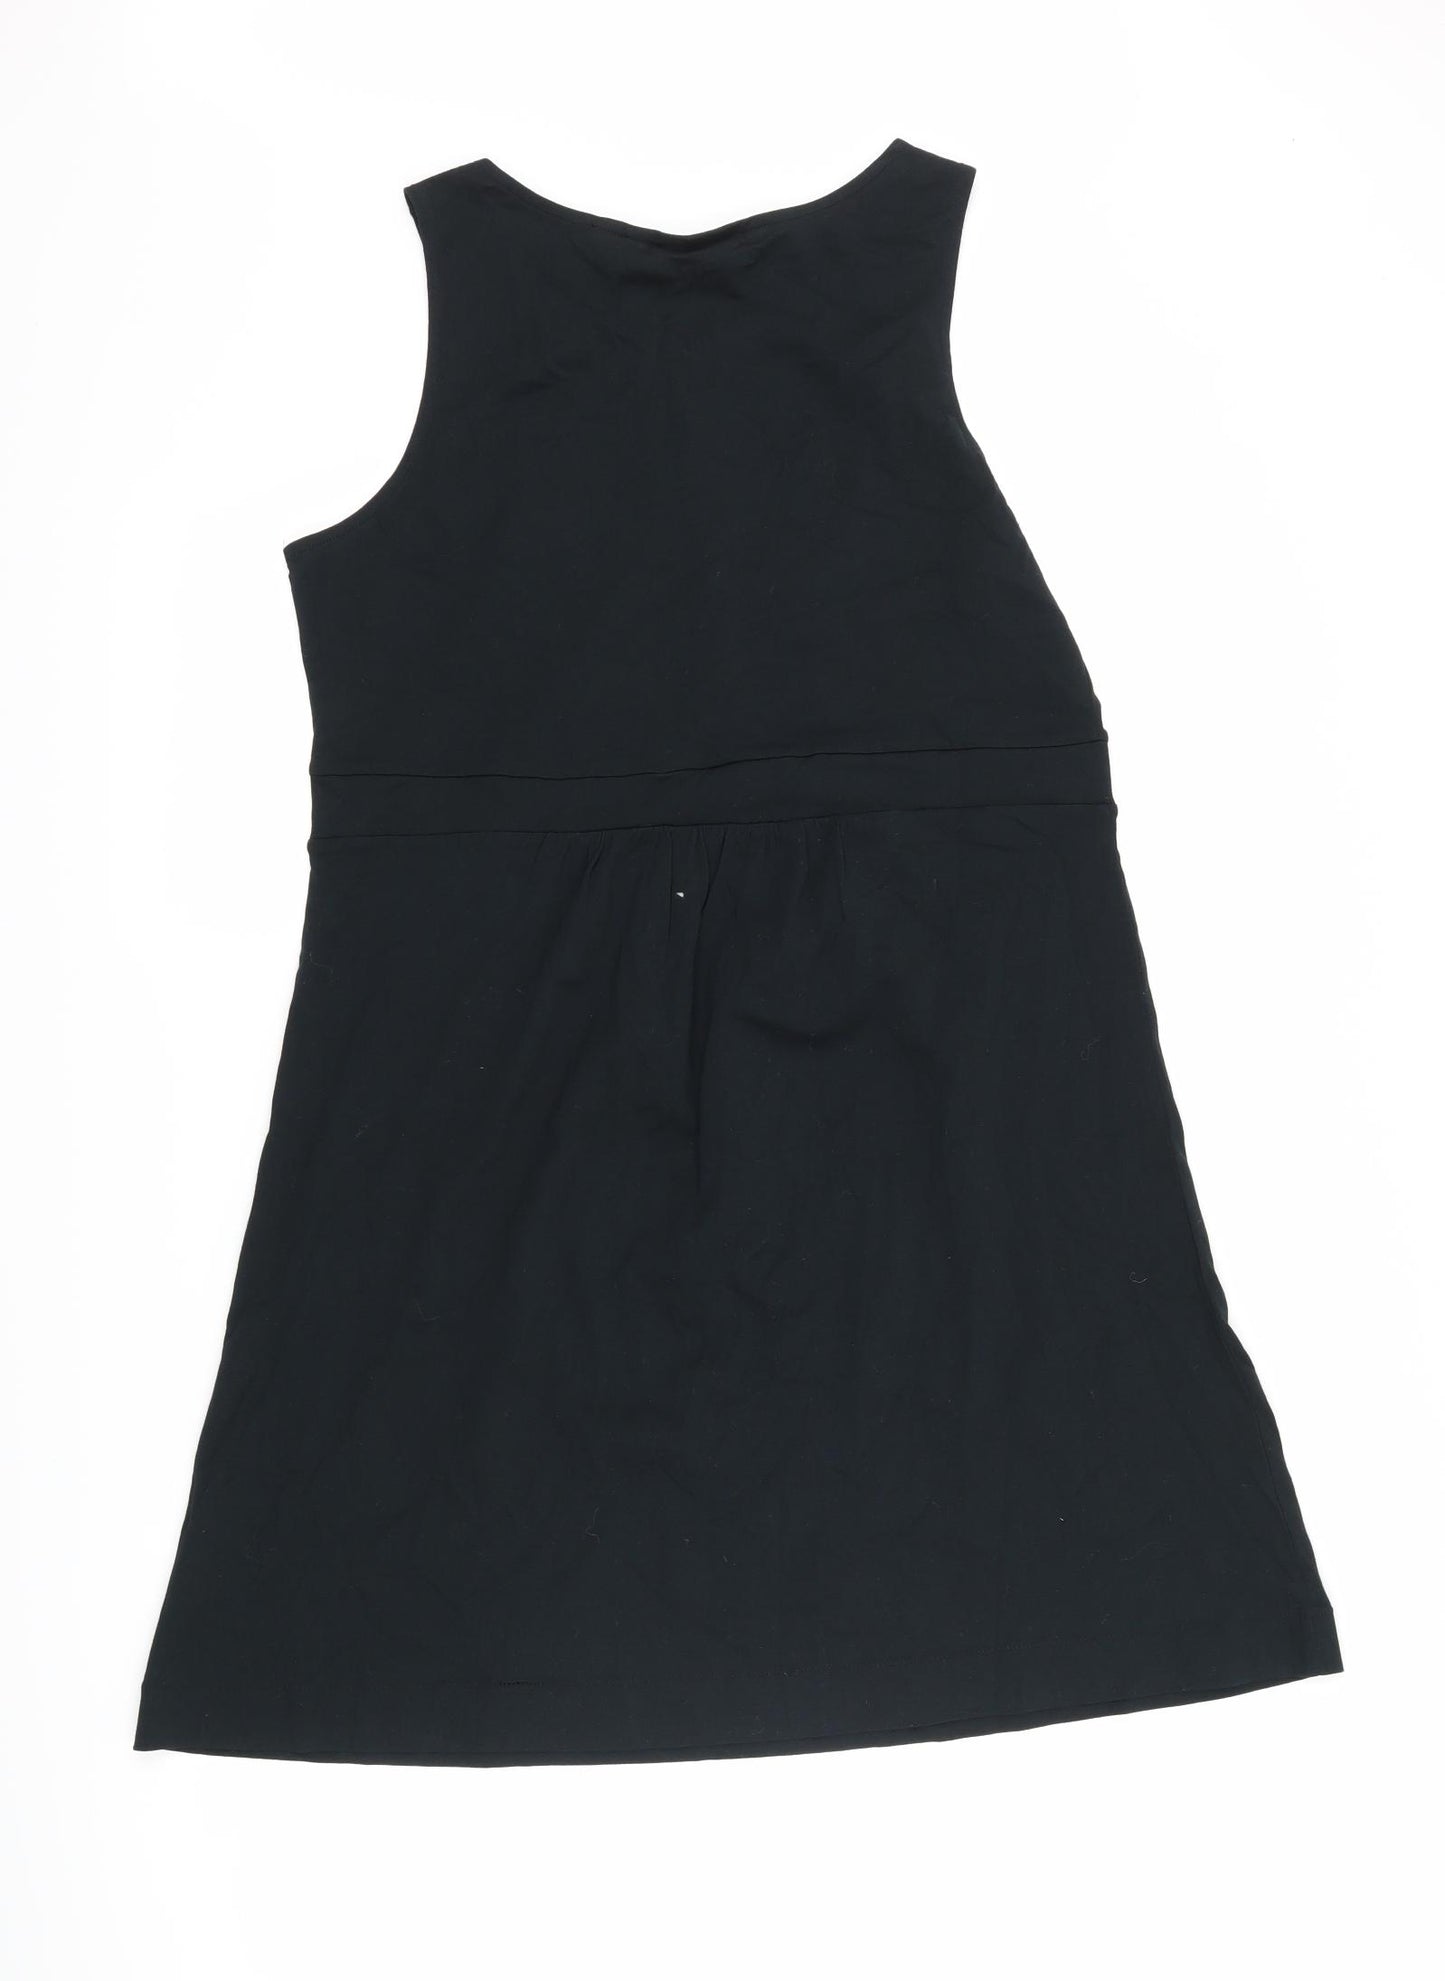 Mexx Womens Black   Tank Dress  Size L